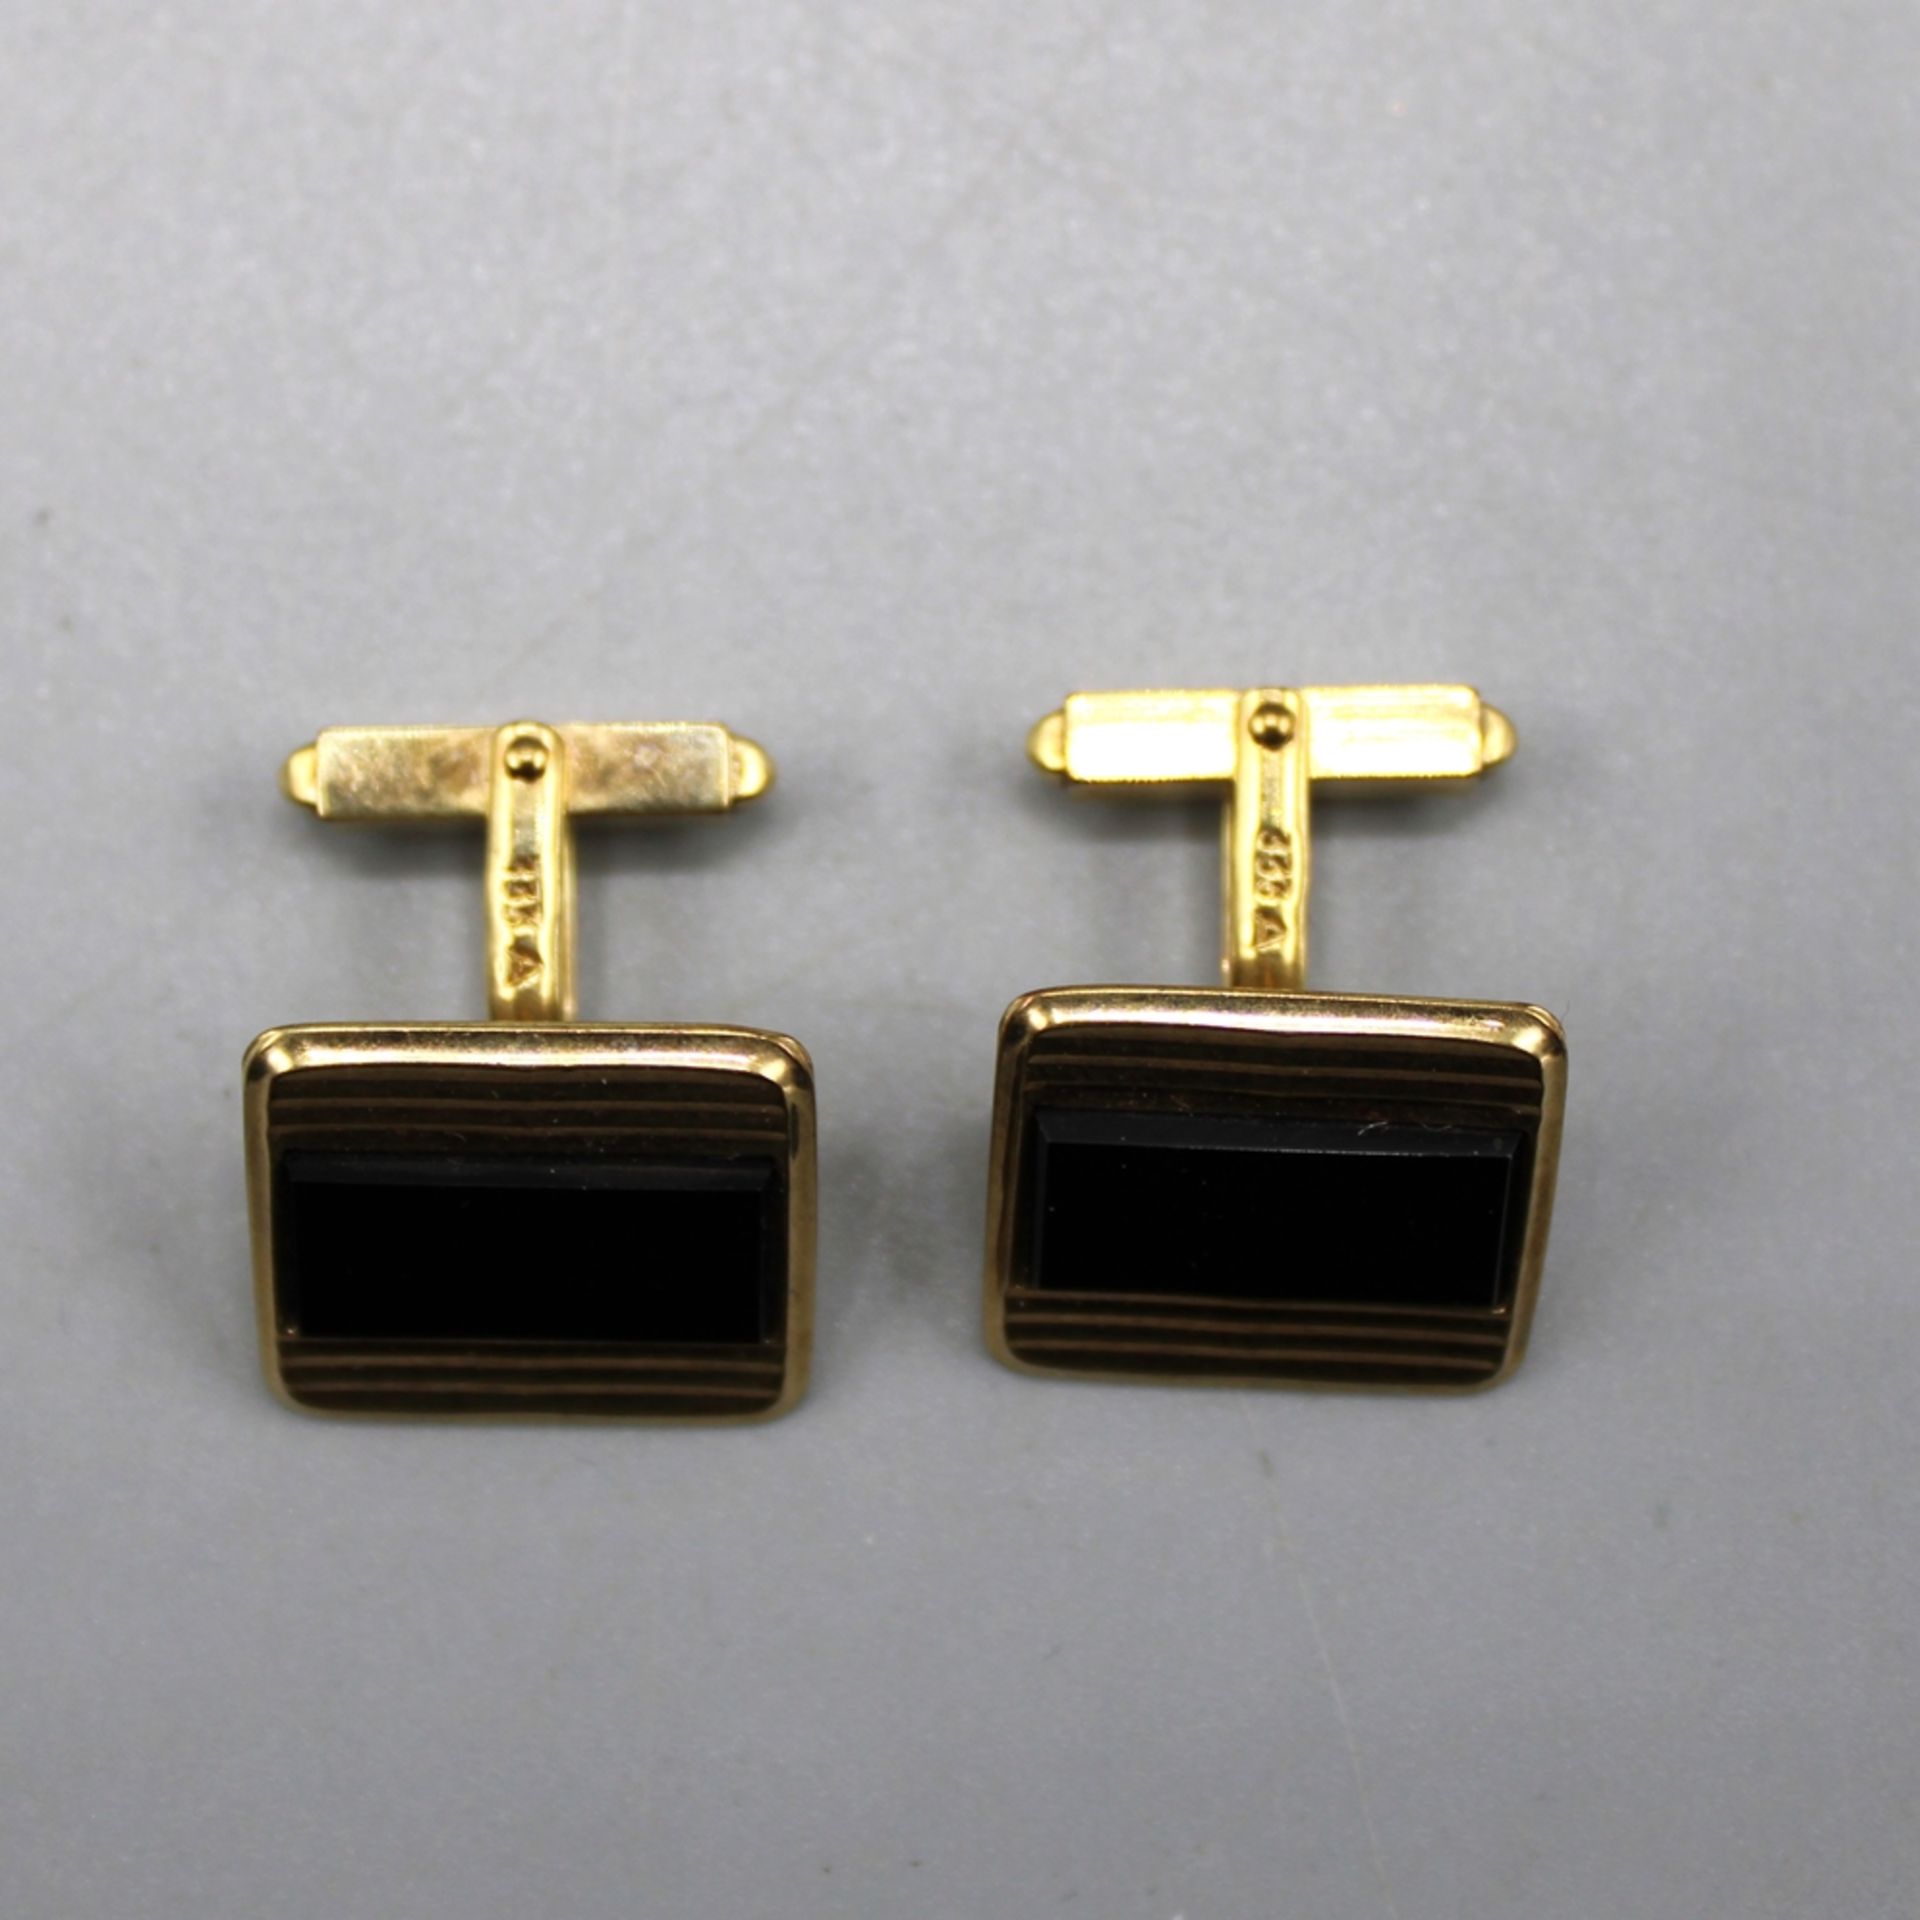 Onyx Manschettenknöpfe 333 Gold, ca. 17,5 x 15,1 mm, 8,7 g - Bild 2 aus 2